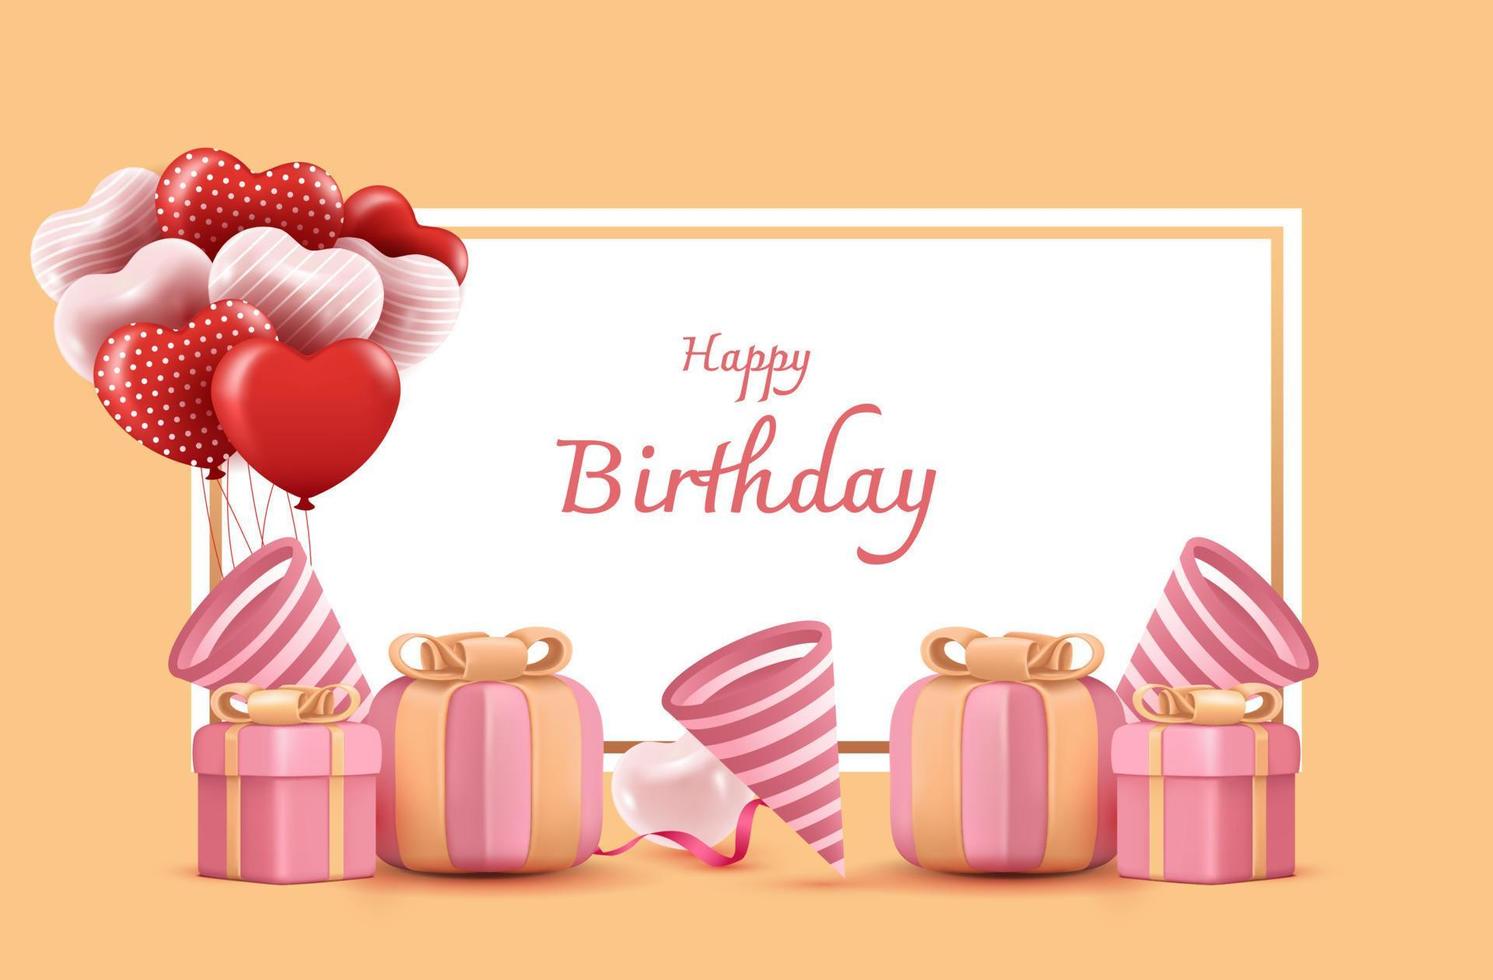 feliz aniversário vector design para cartões e pôster com balão, confete e caixa de presente, modelo de design para festa de aniversário.